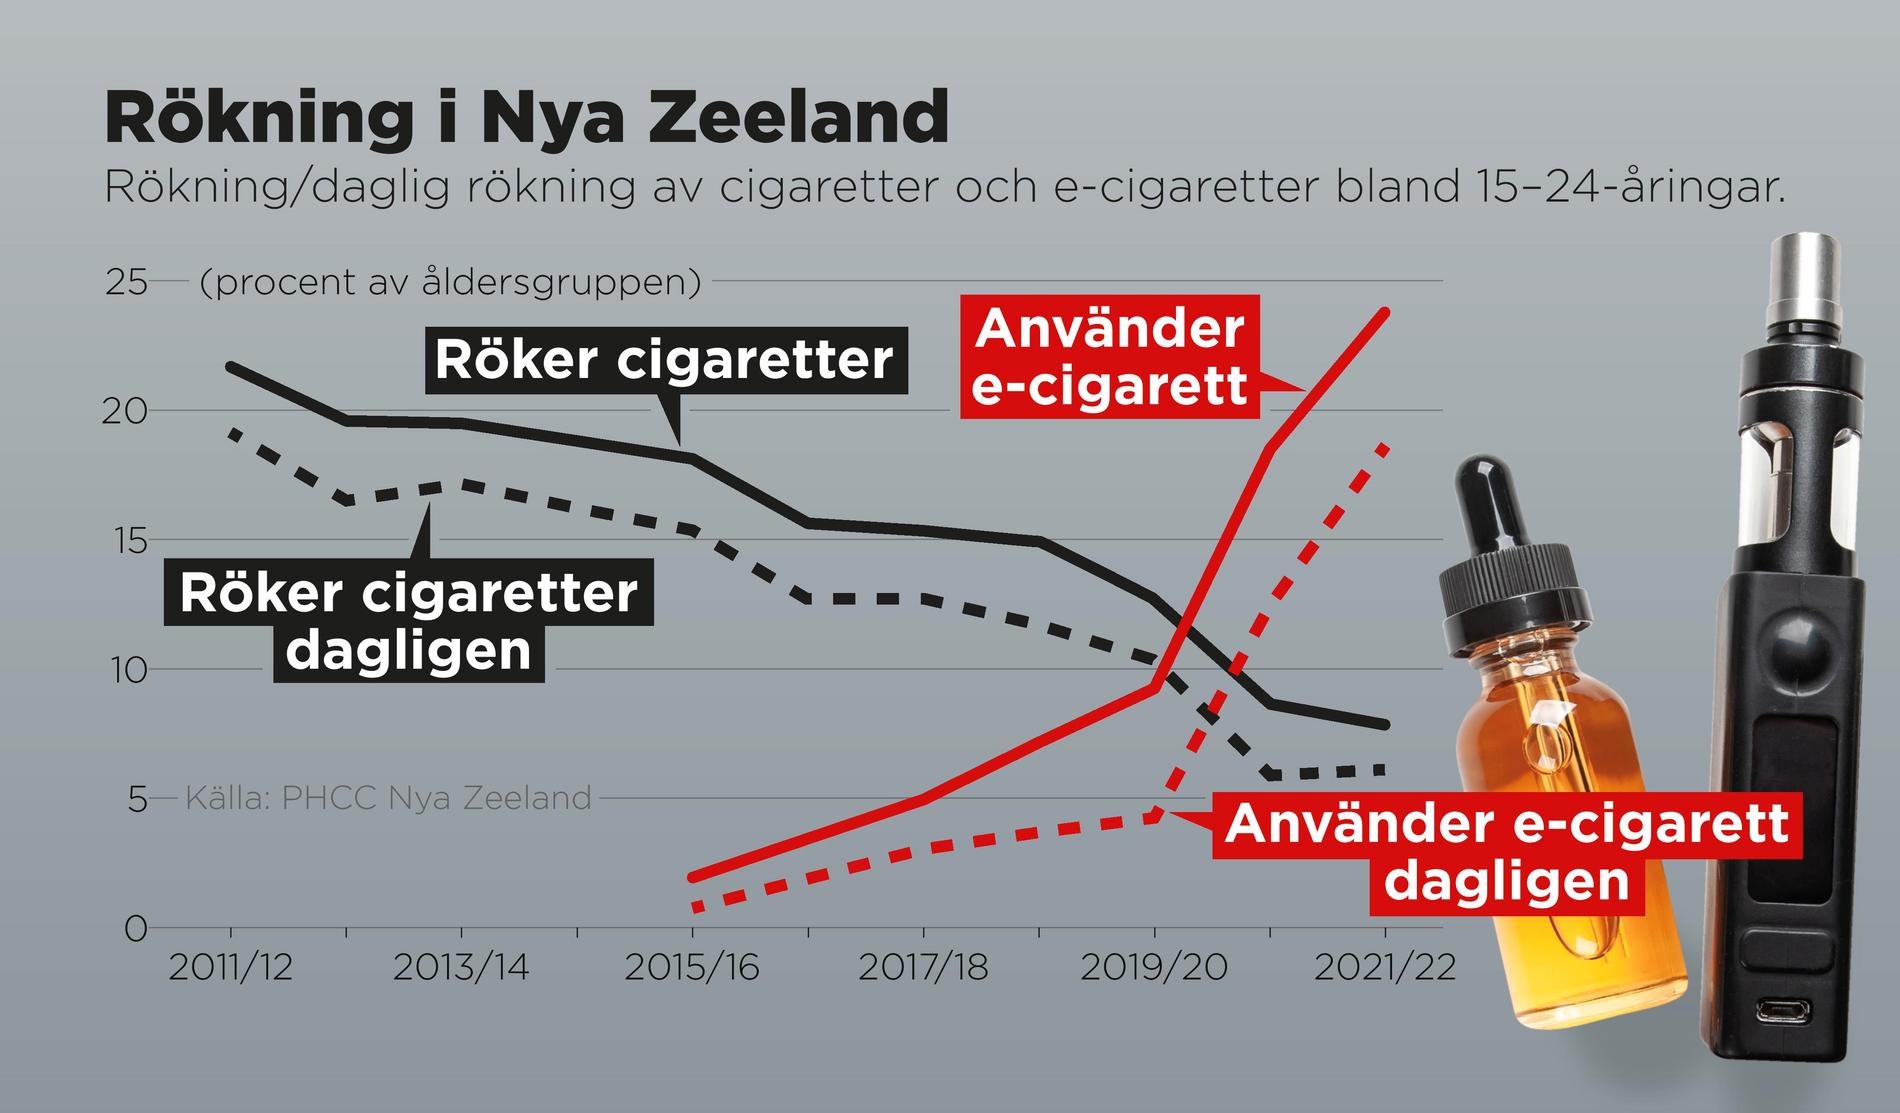 Trender för rökning av cigaretter och e-cigaretter bland 15–24-åringar i Nya Zeeland.